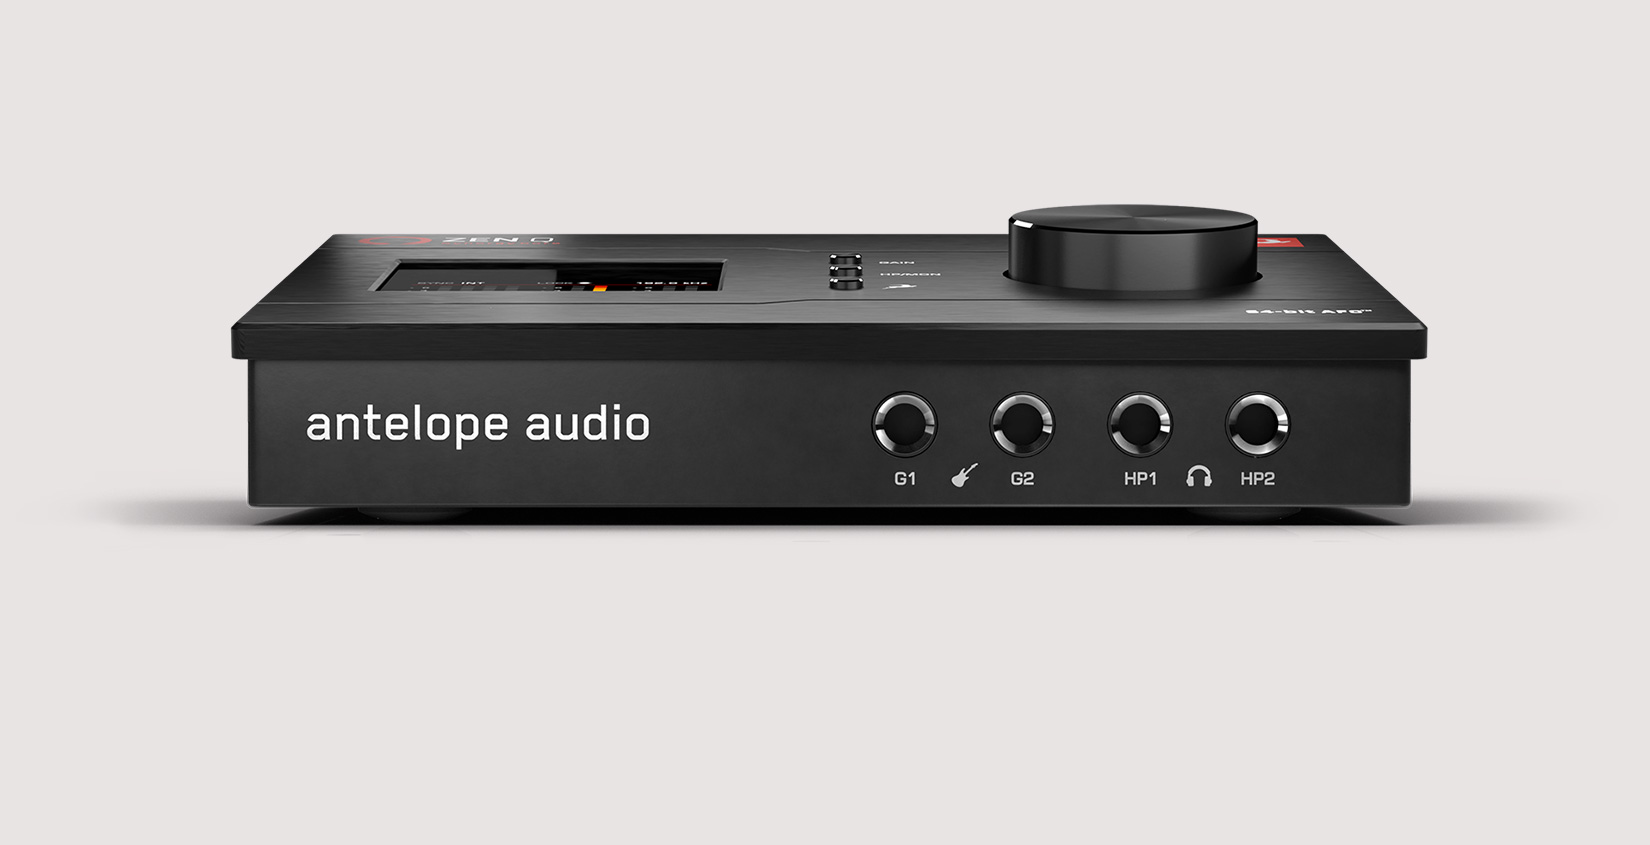 Antelope Audio Zen Q Synergy Core по цене 73 750 ₽